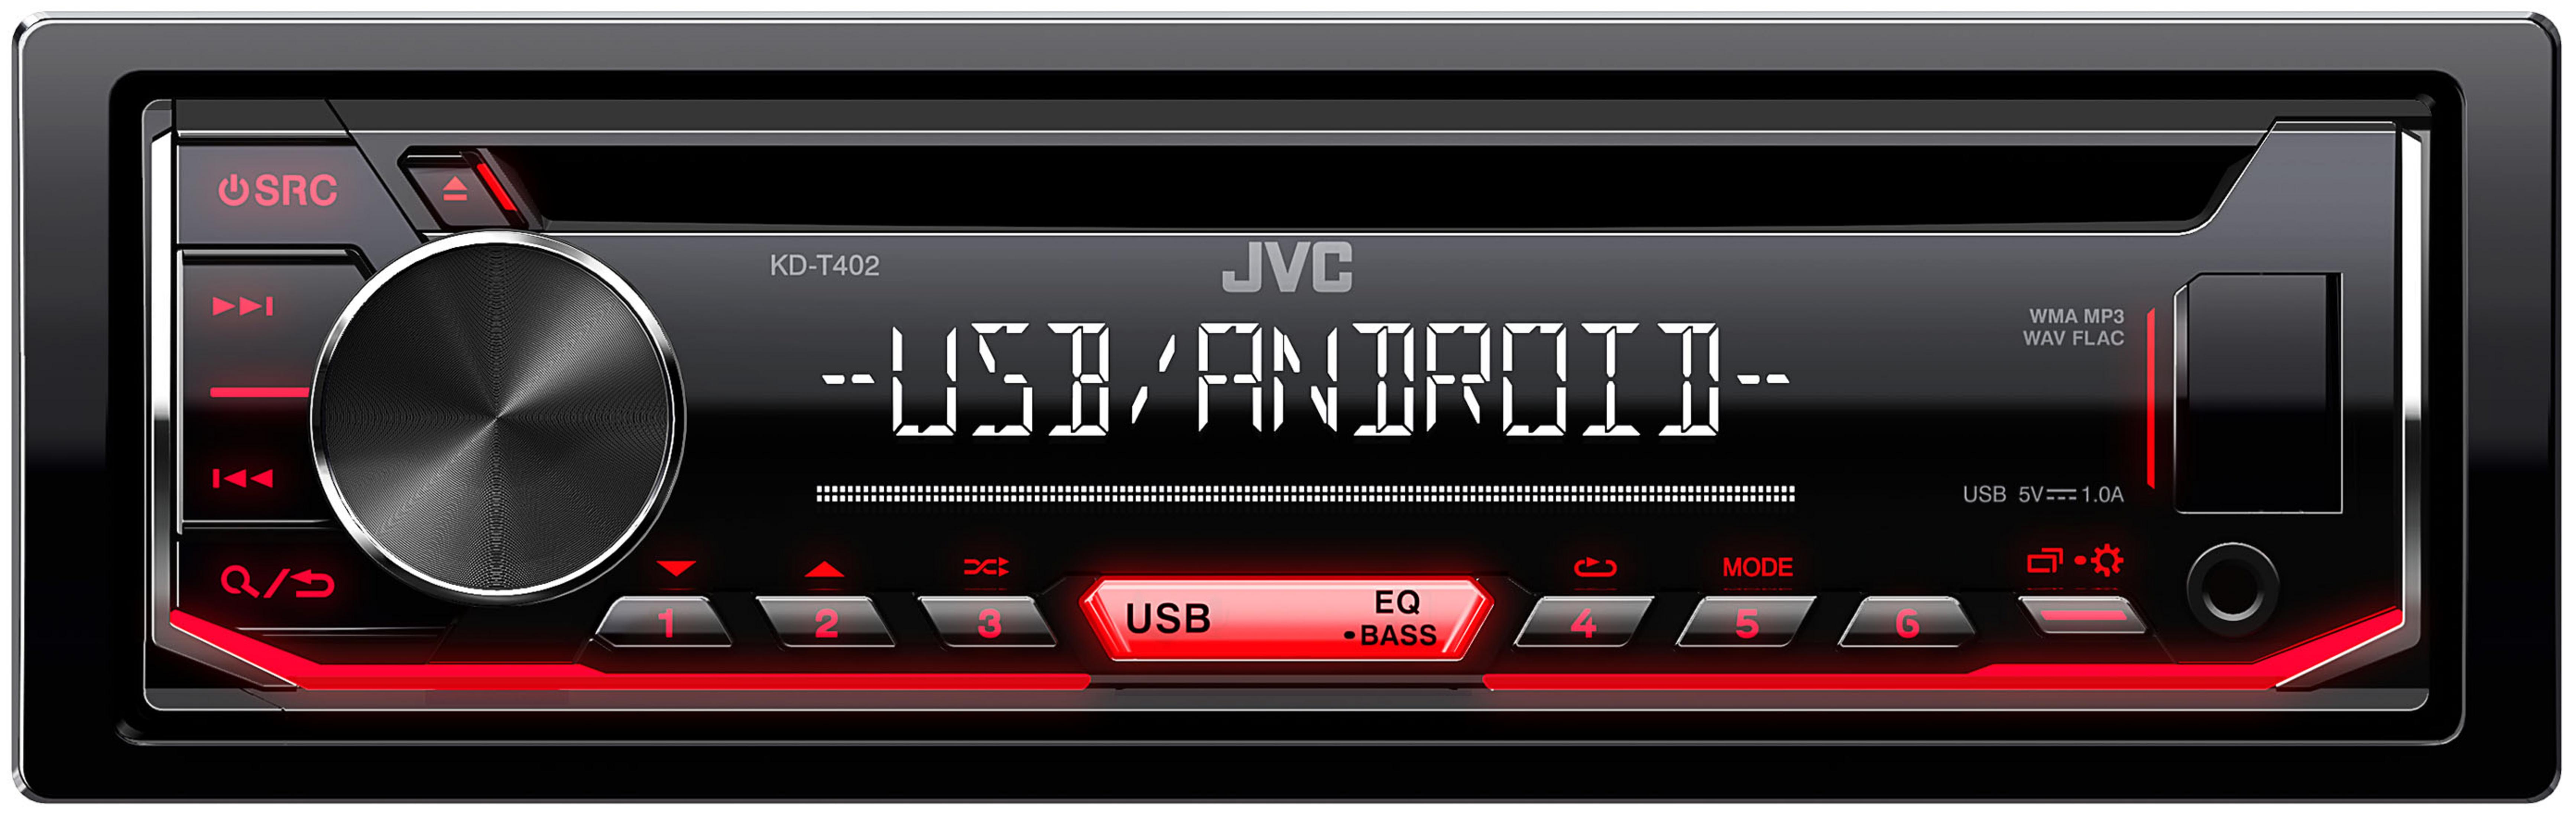 1 Autoradio 50 JVC KDT Watt 402 DIN,